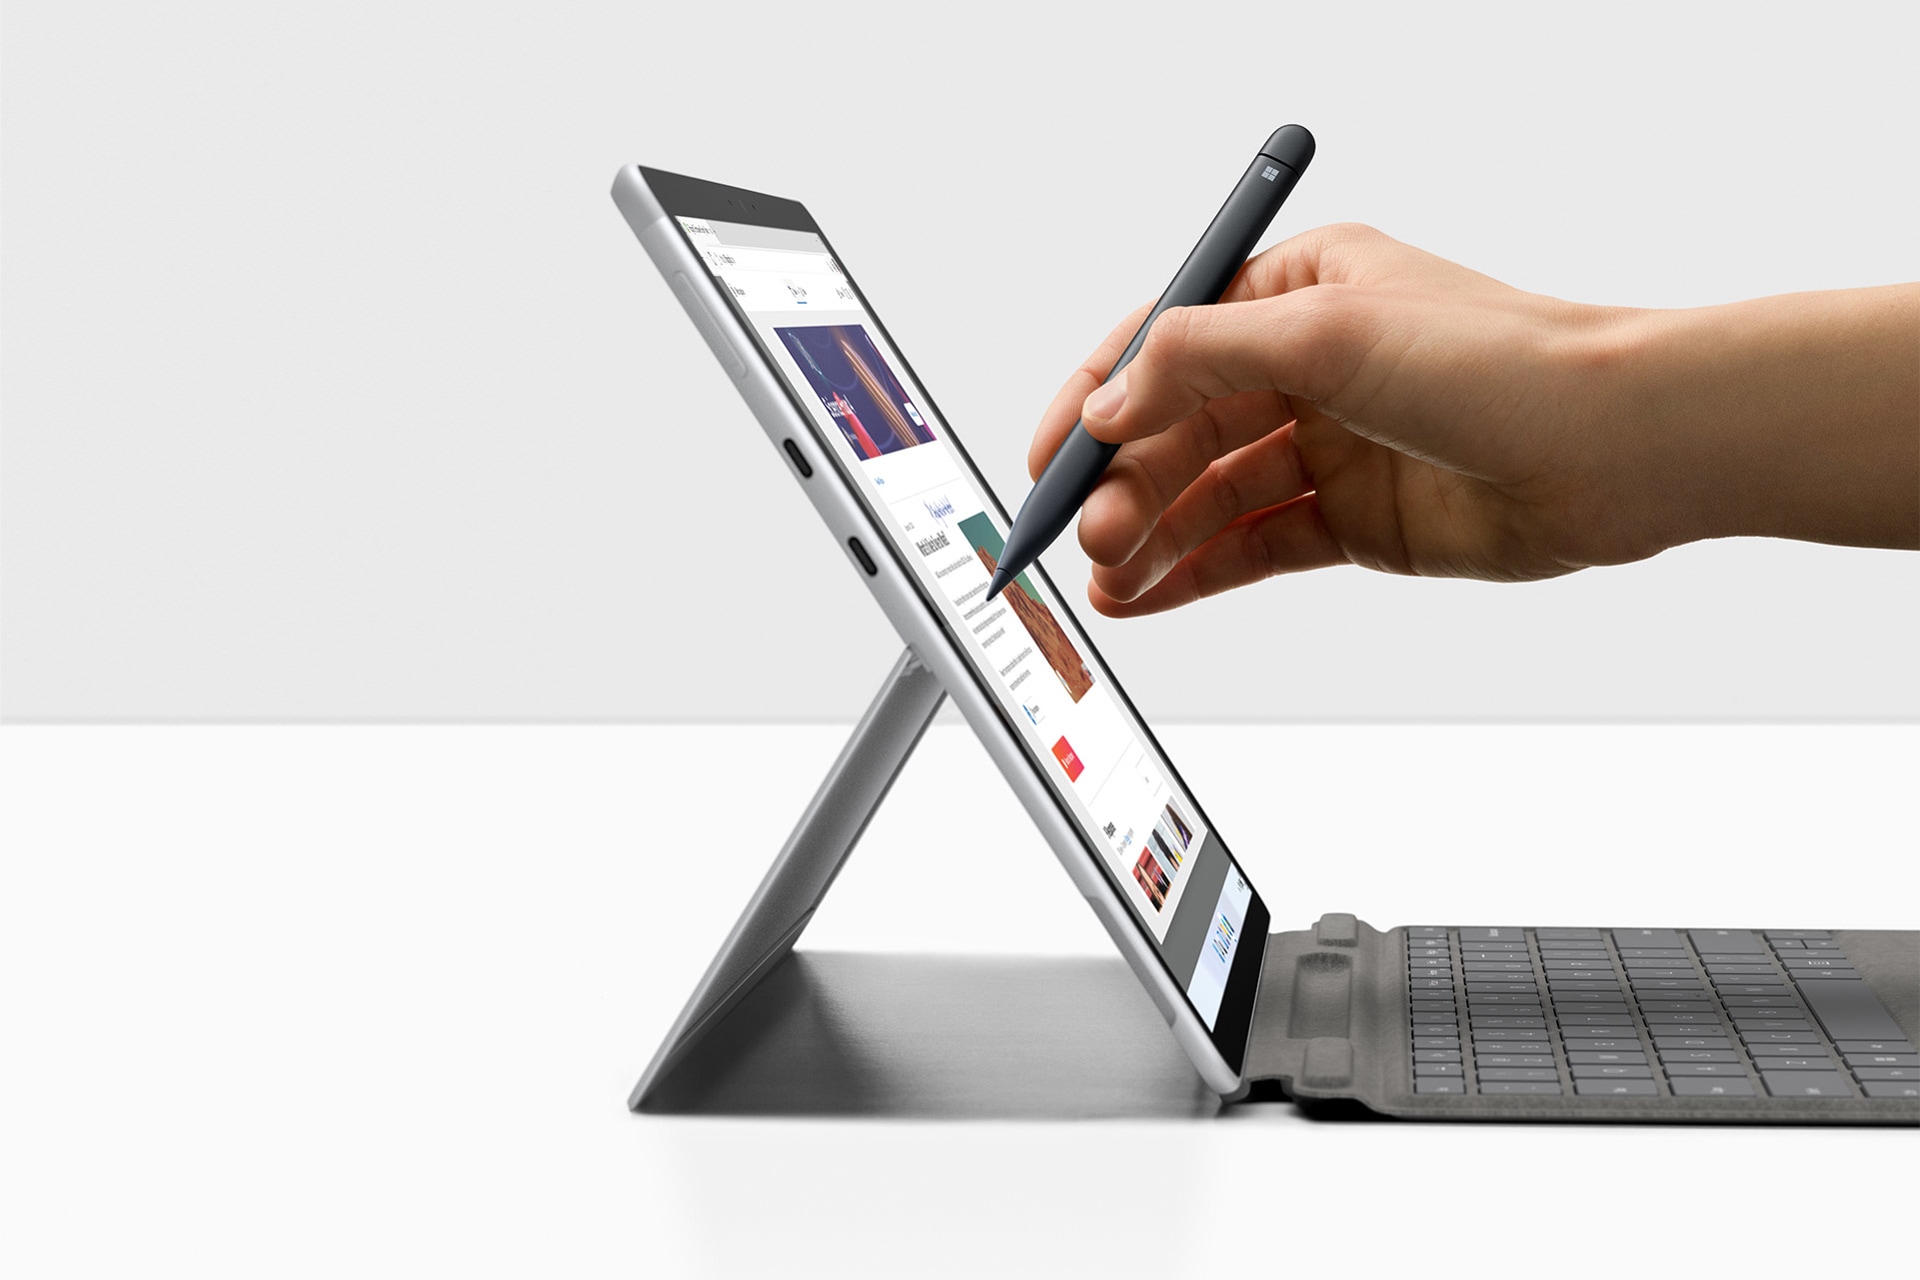 Surface Pro X 與 Surface 手寫筆搭配使用。